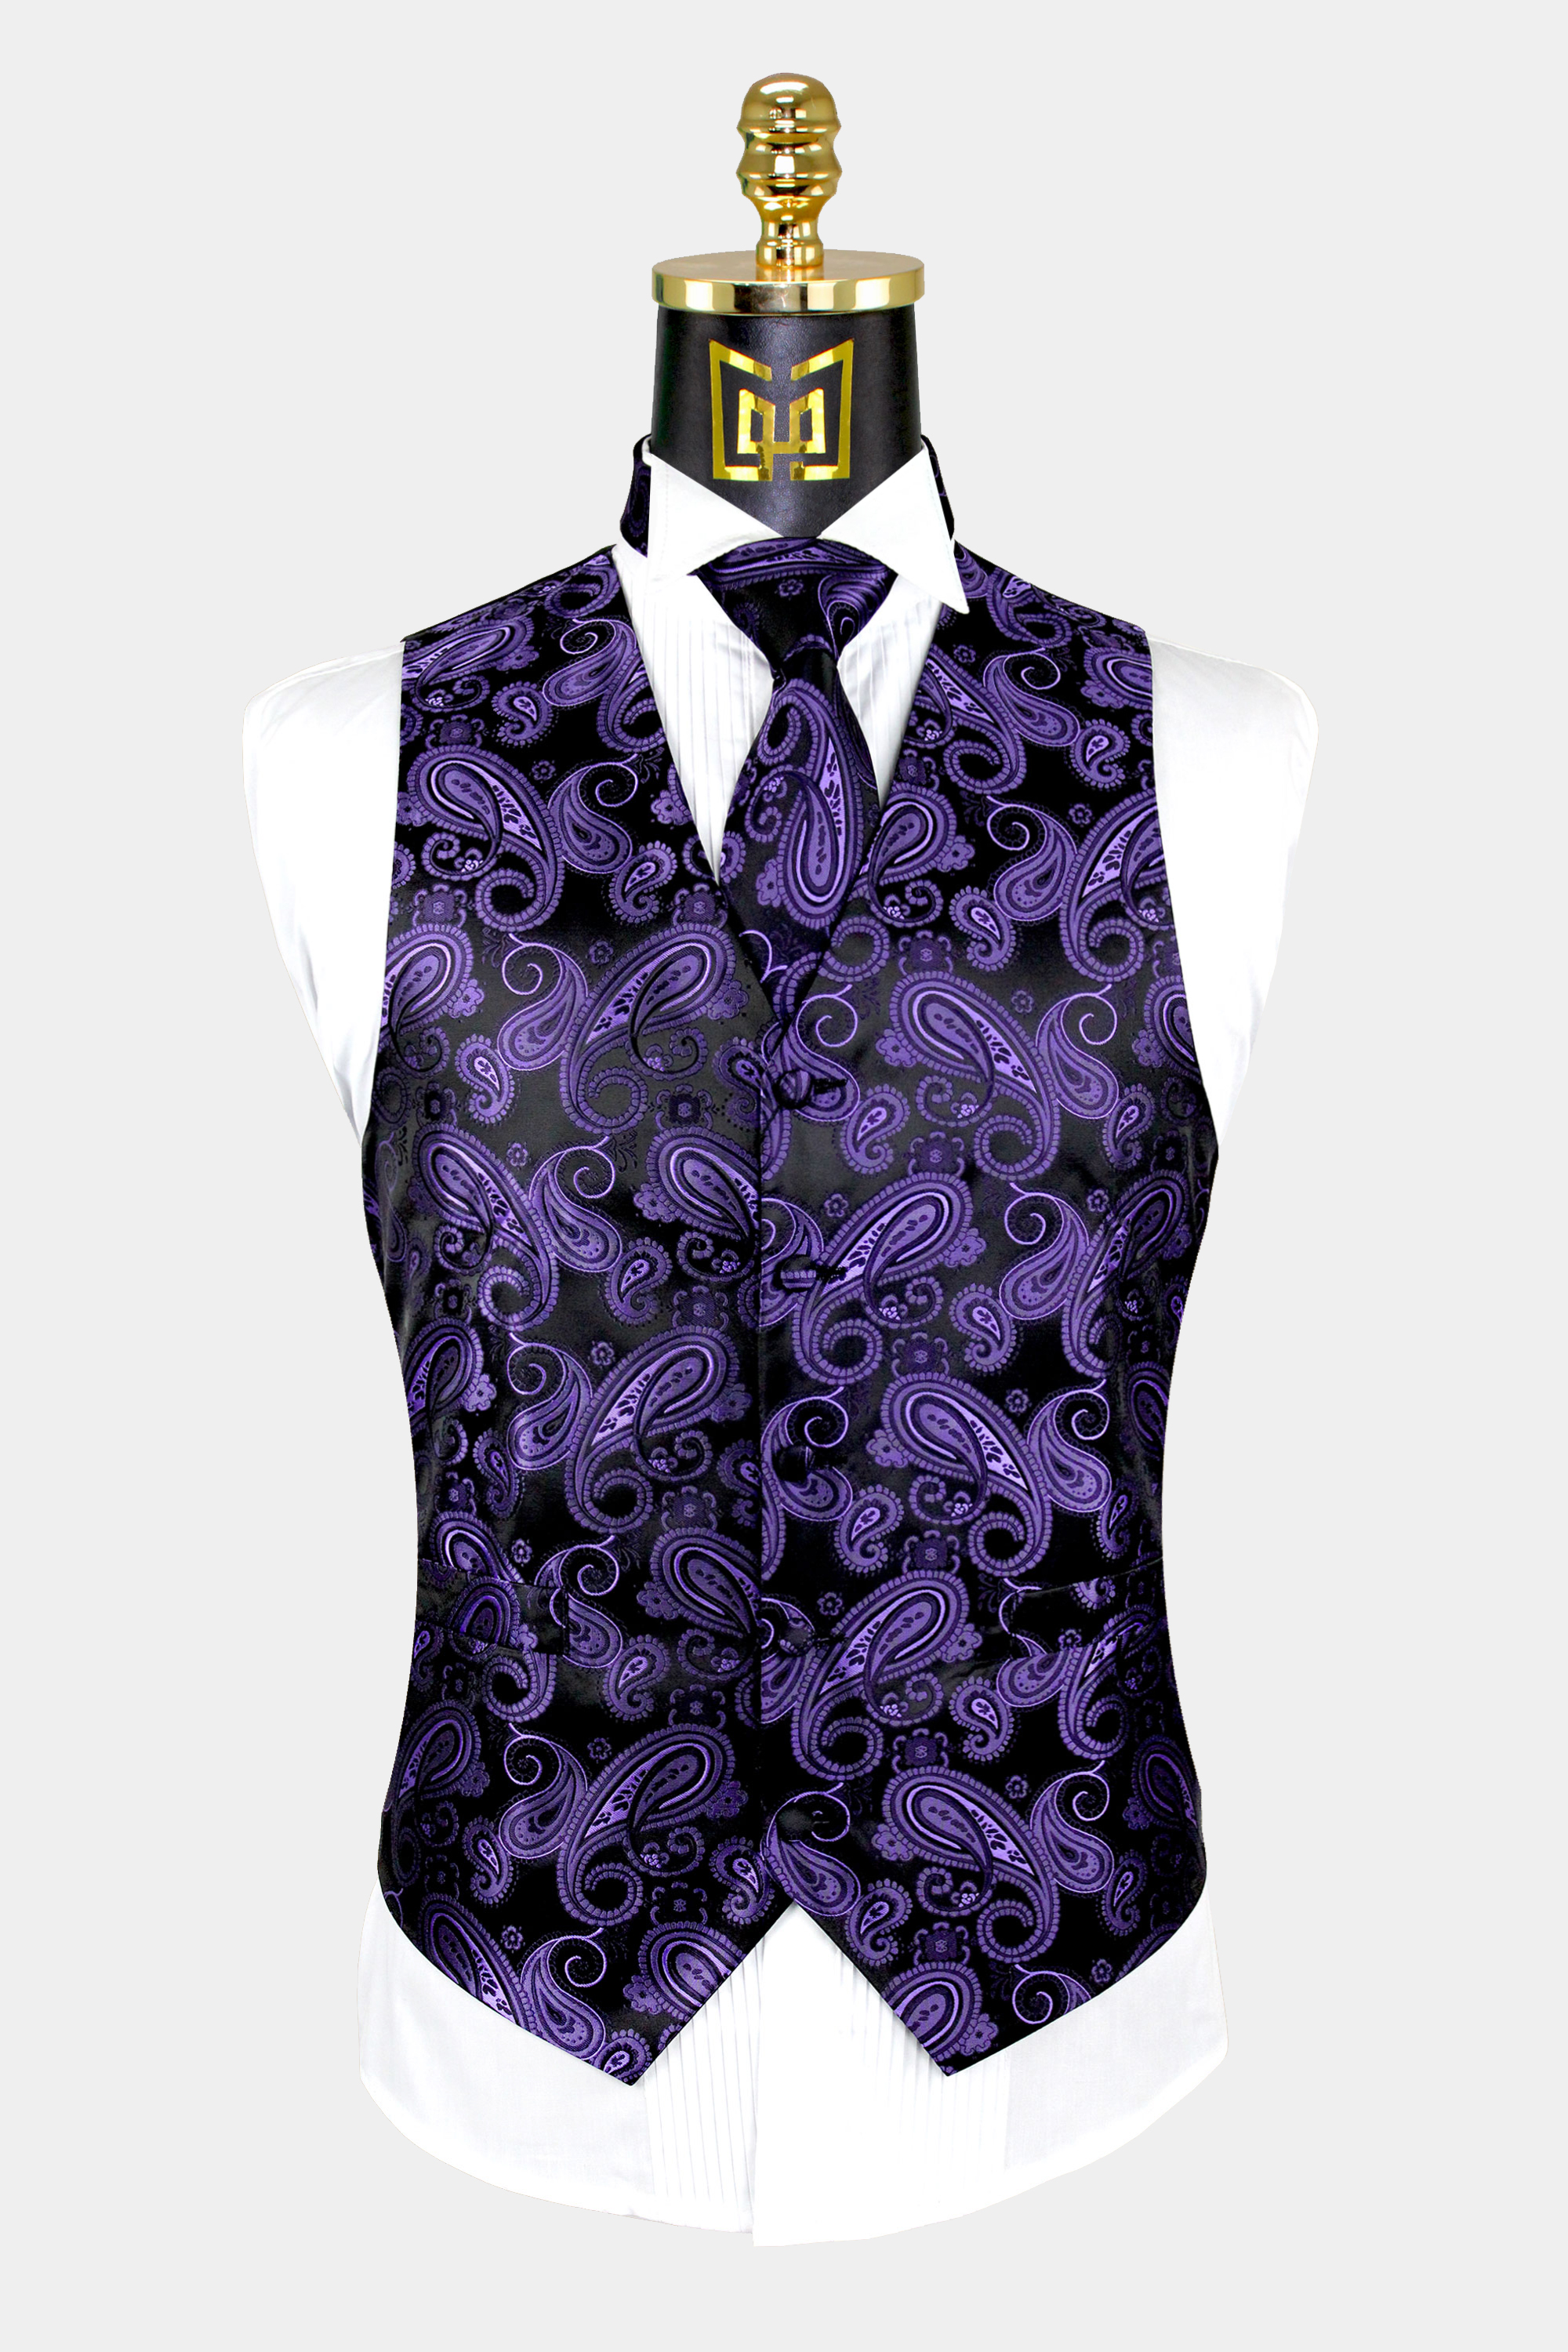 Mens-Purple-Paisley-Vest-and-Tie-Set-Groom-Wedding-Waistcoat-from-Gentlemansguru.com